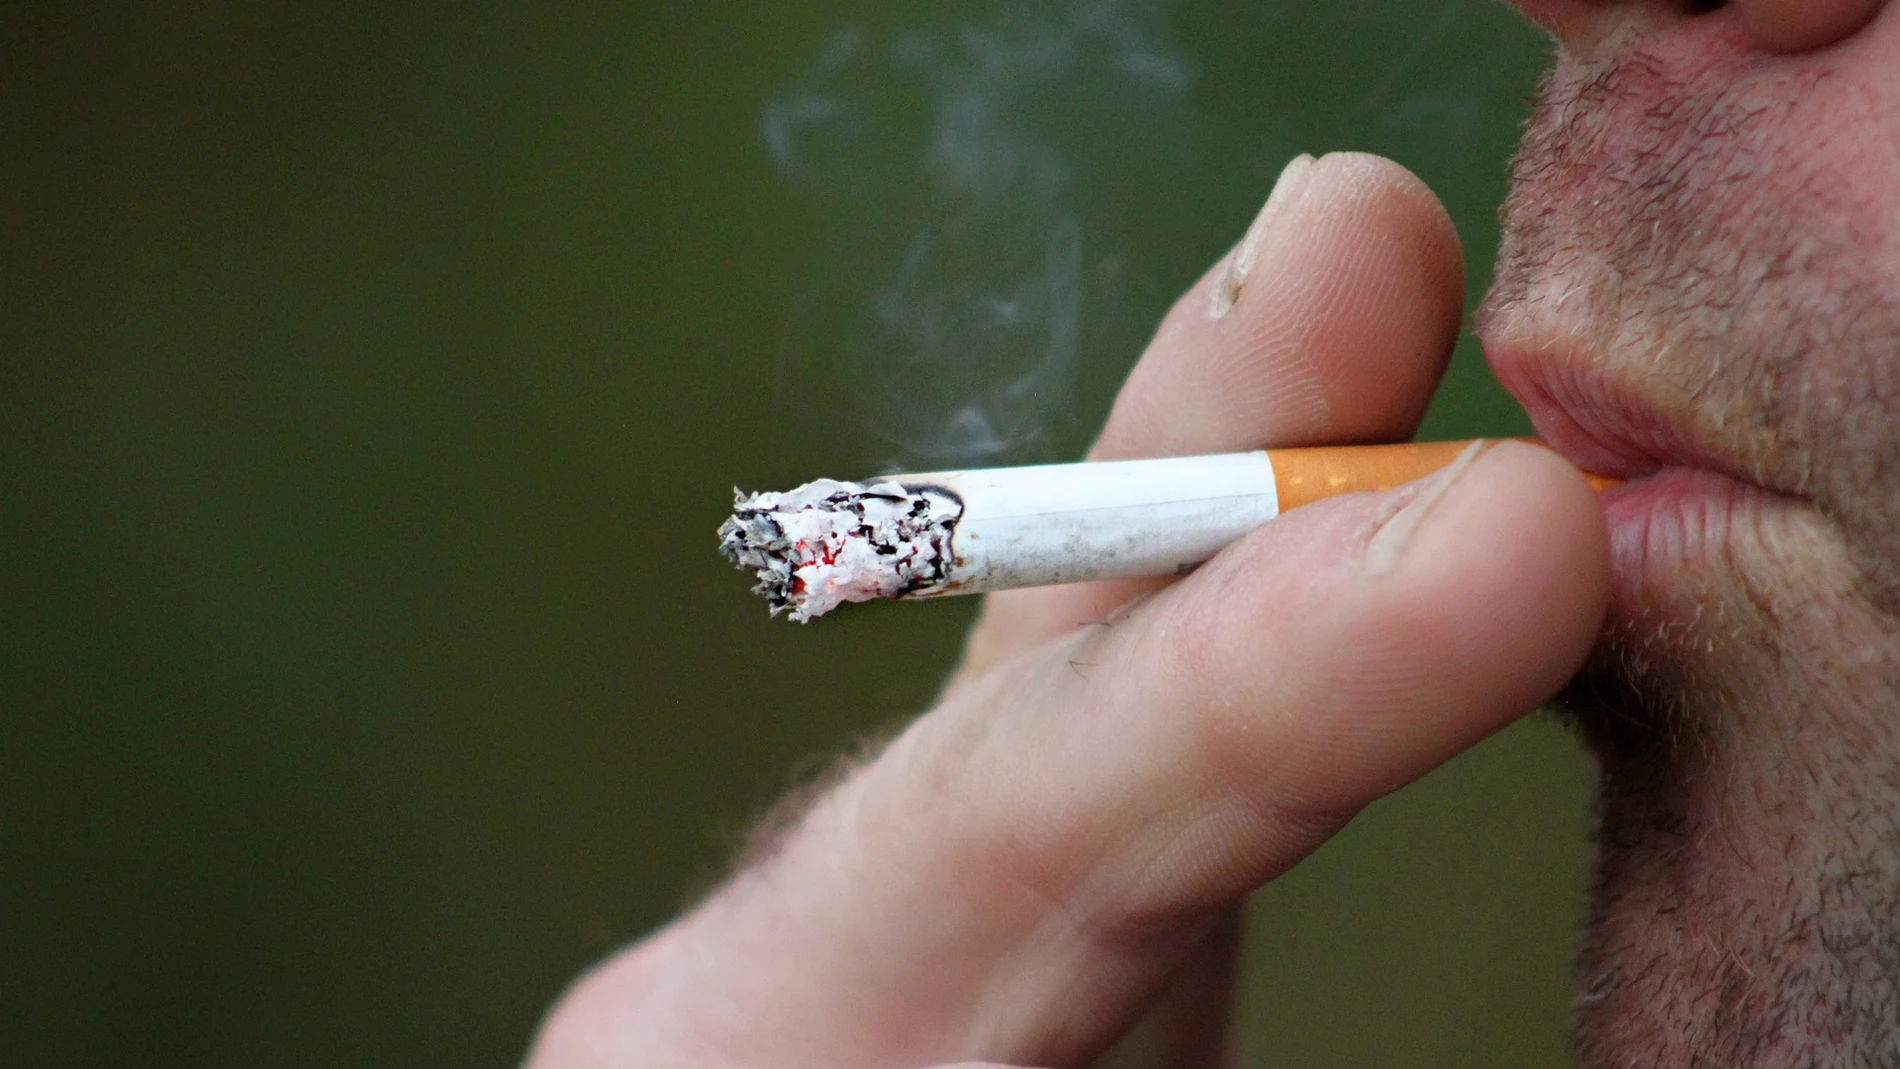 Imagen de archivo de una persona fumando